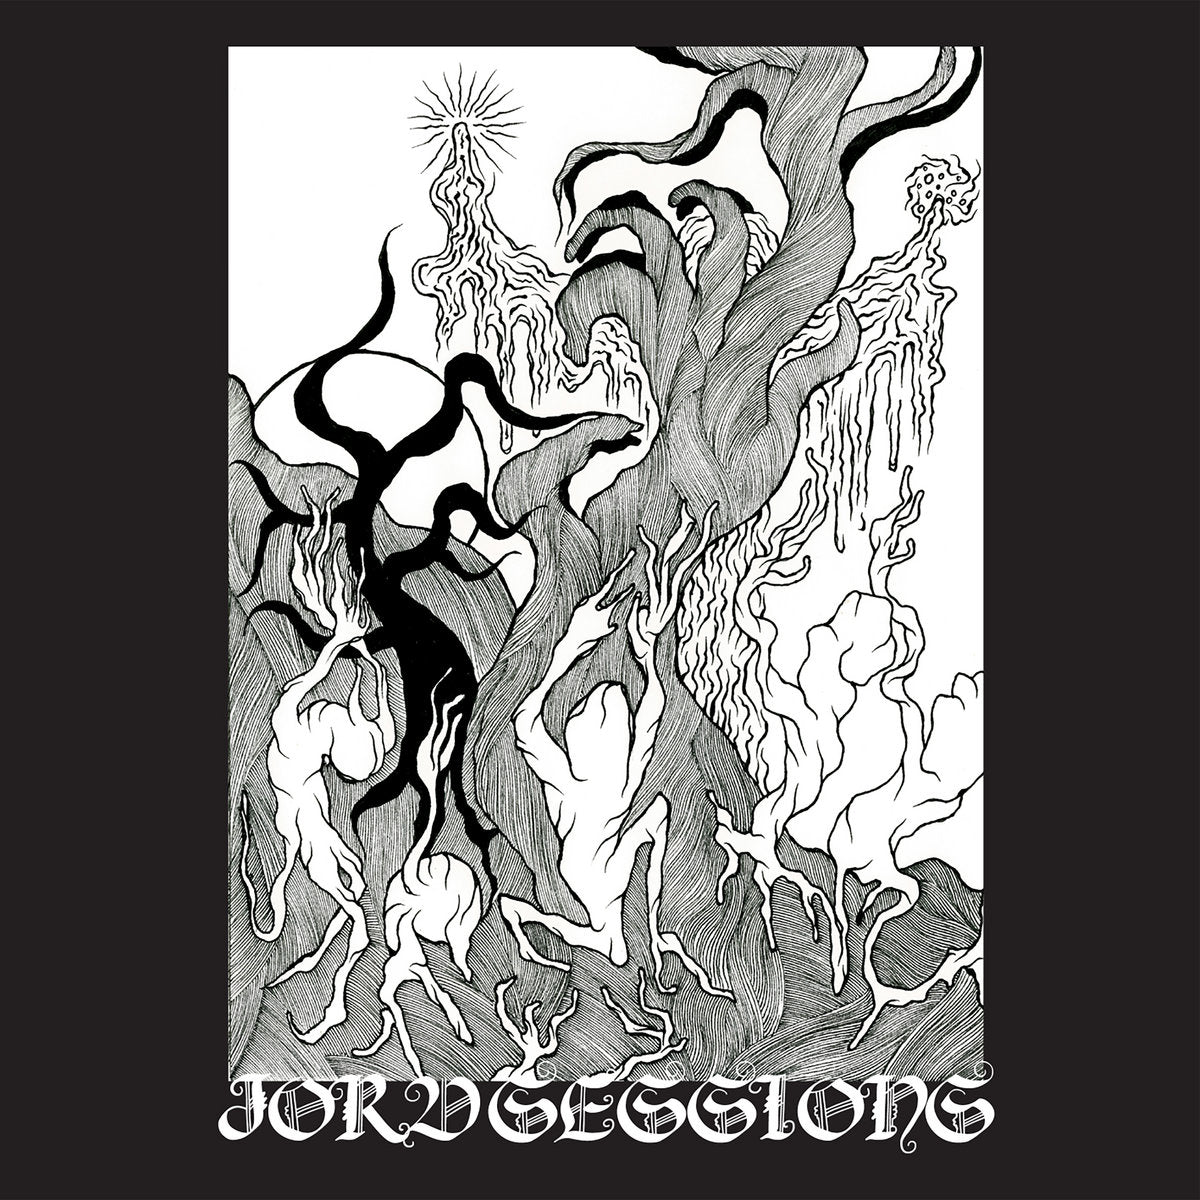 Jordsjo - JORD SESSIONS LP (Red Vinyl)